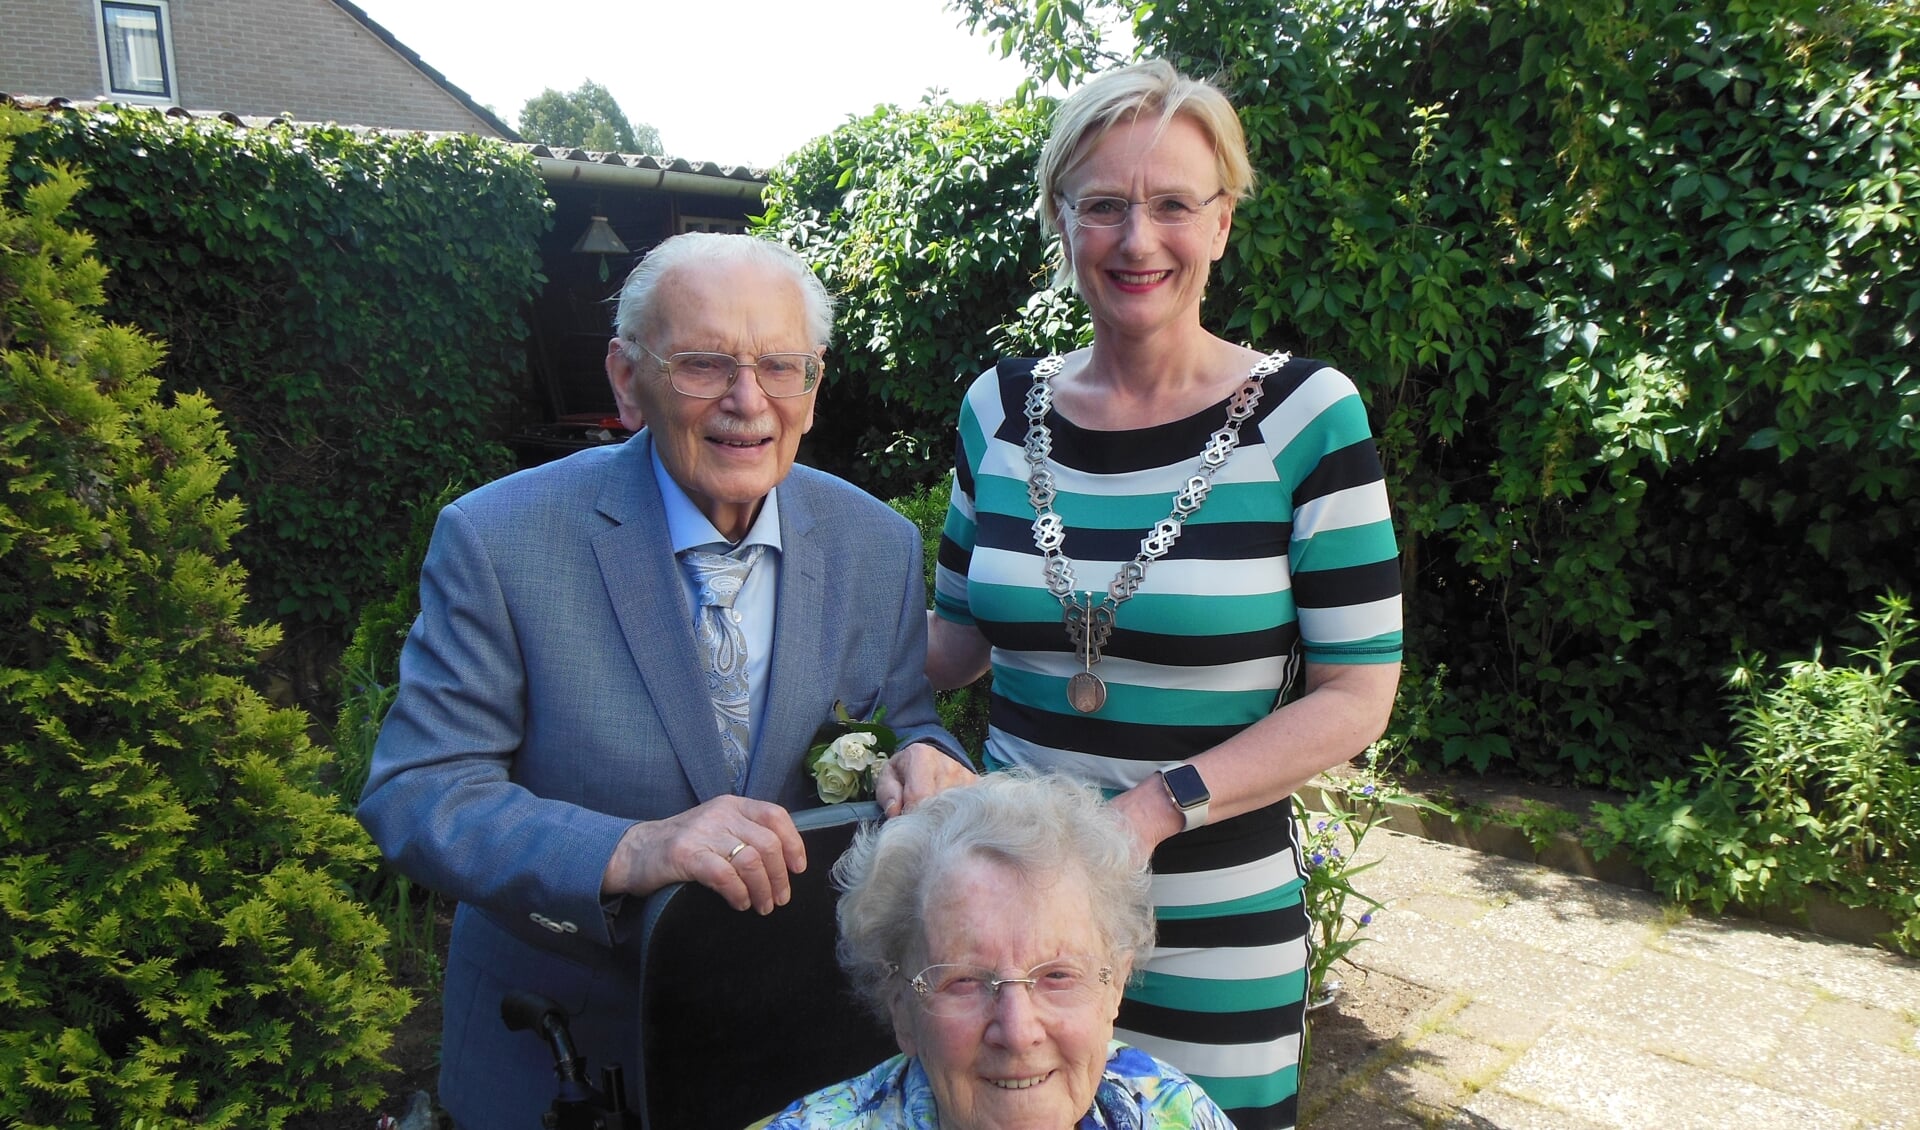 Jo en Jan van Kleef uit Zelhem kregen ter gelegenheid van hun 65-jarig huwelijksfeest bezoek van burgemeester Marianne Besselink. Als het aan het briljanten bruidspaar ligt, komt zij over vijf jaar weer. Foto: Eric Klop